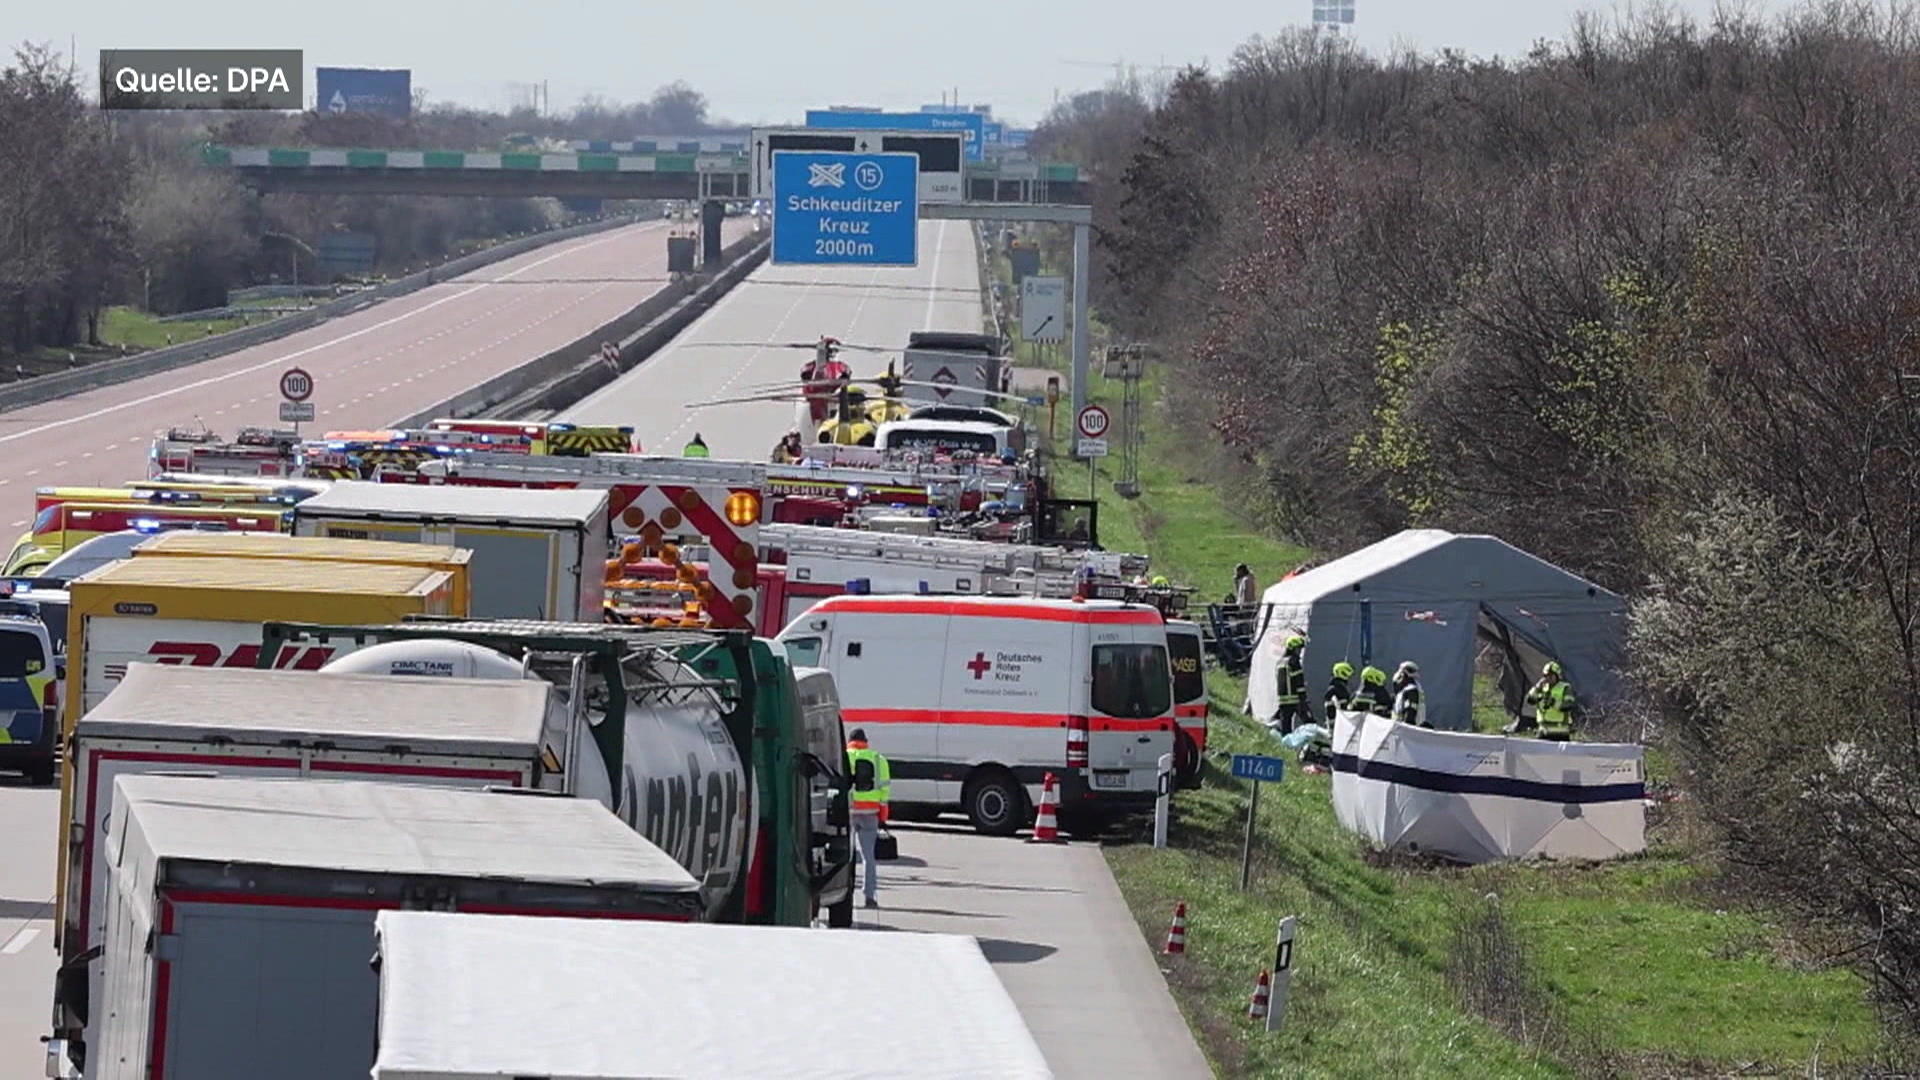 Grave accidente de autobús Flex en la autopista, ¡al menos cinco muertos!